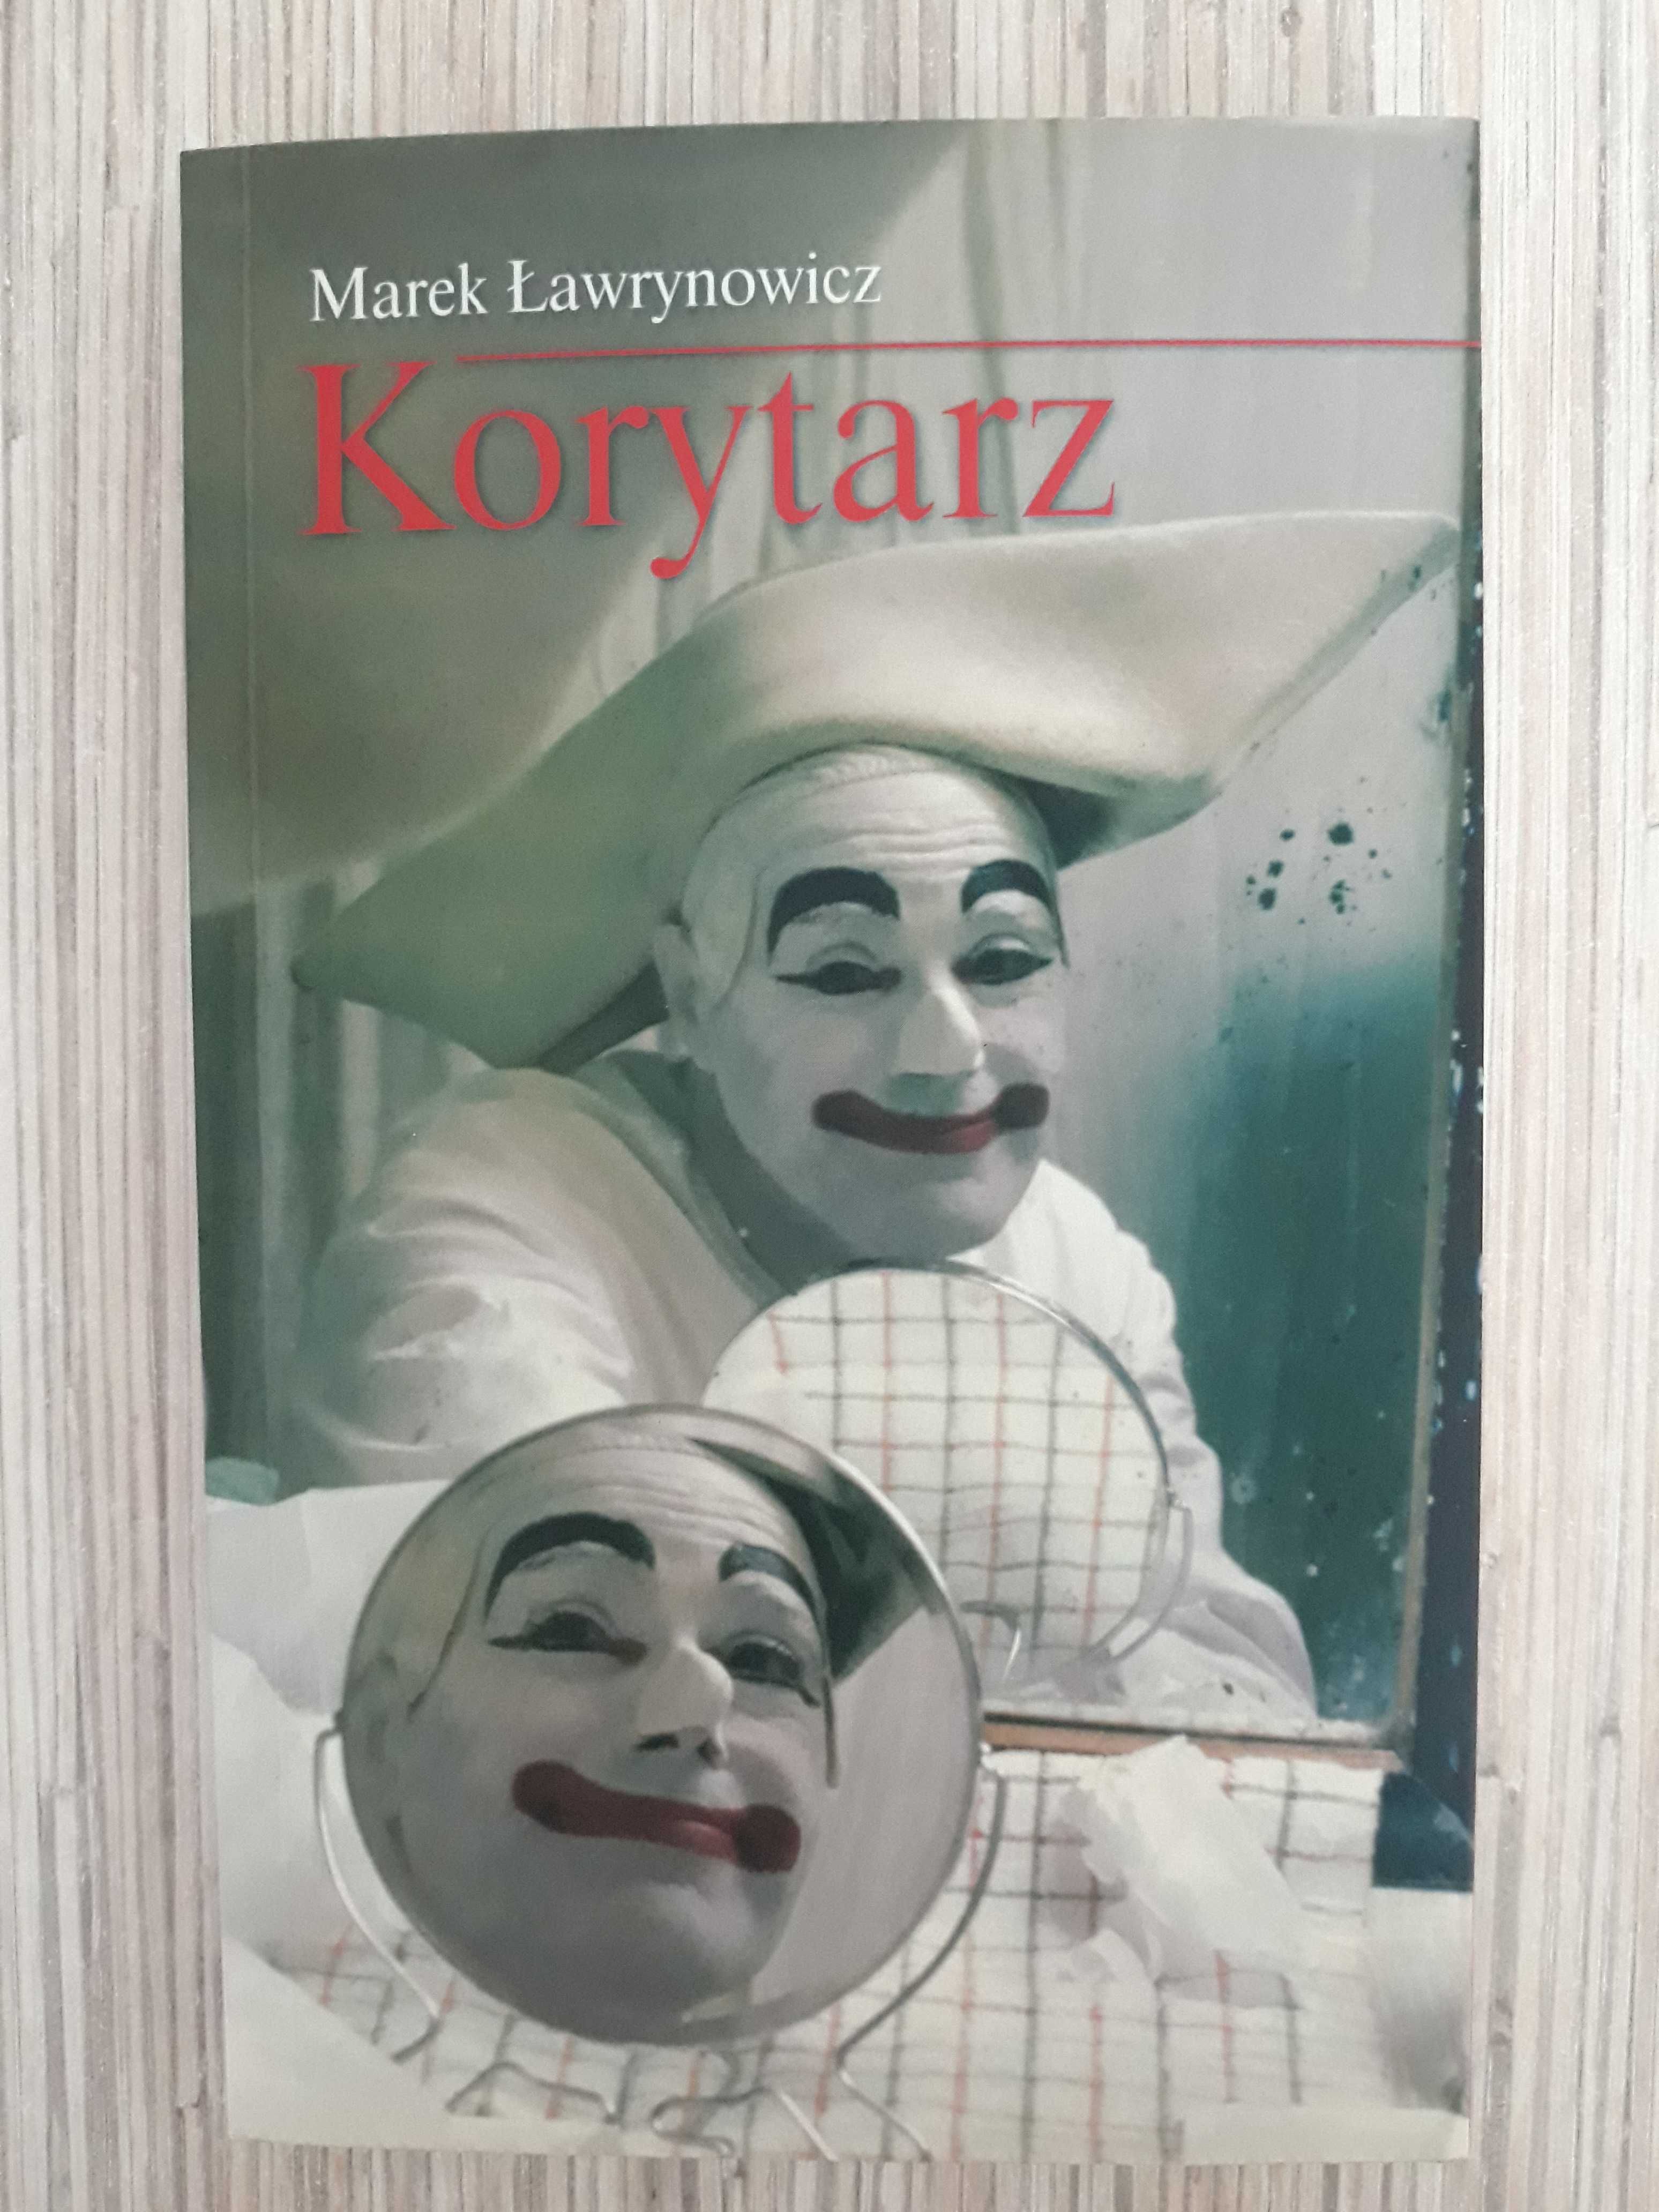 Marek Ławrynowicz "Korytarz"